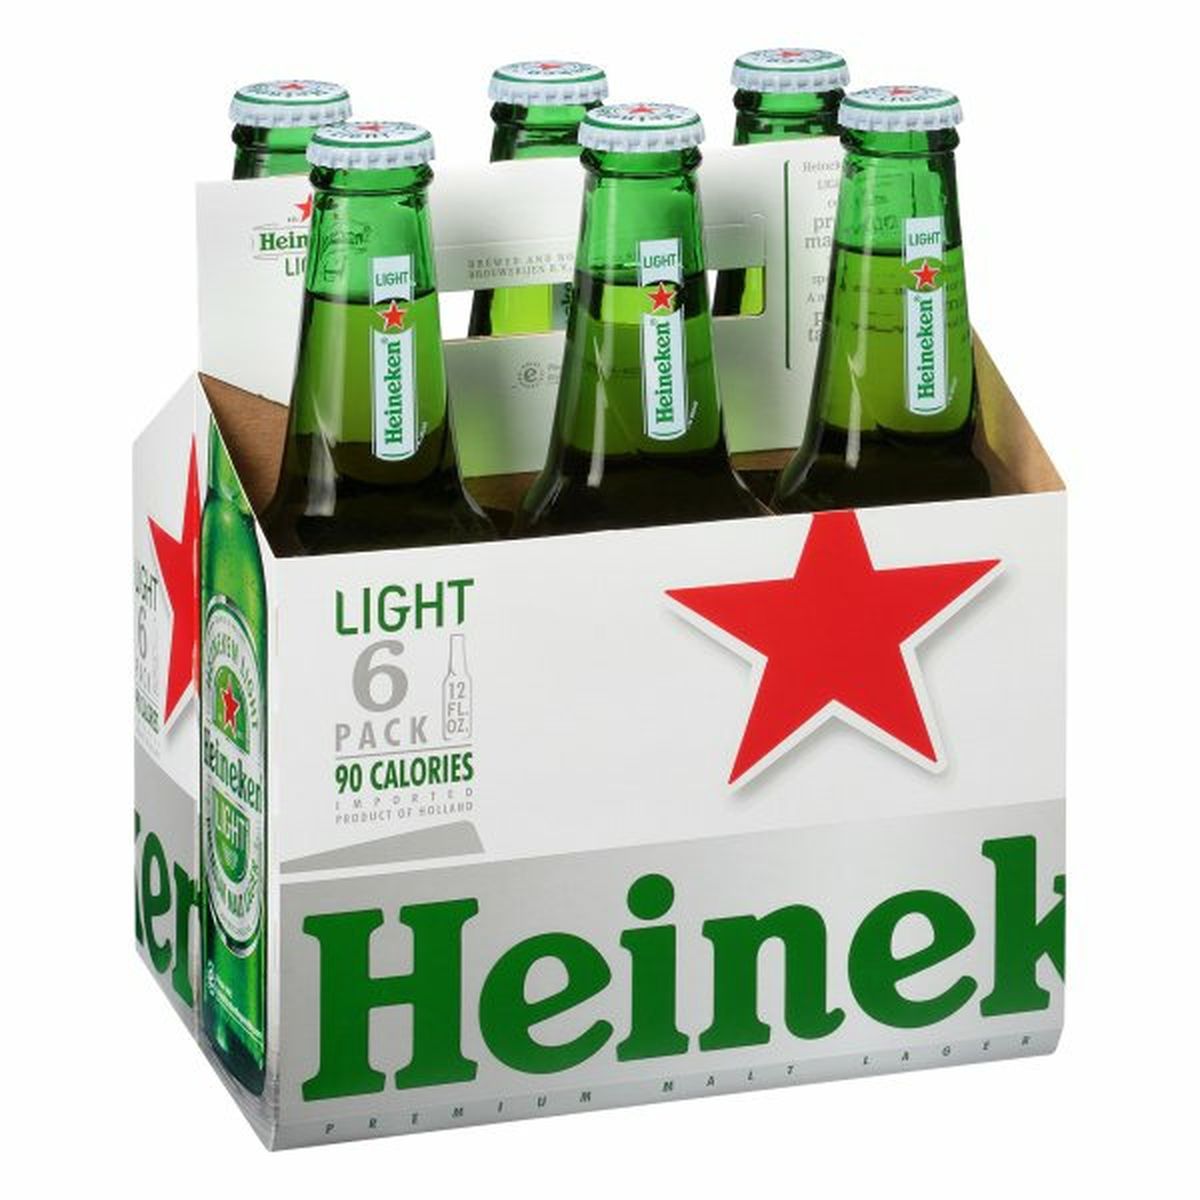 Calories in Heineken Premium Light  6/12 oz bottles